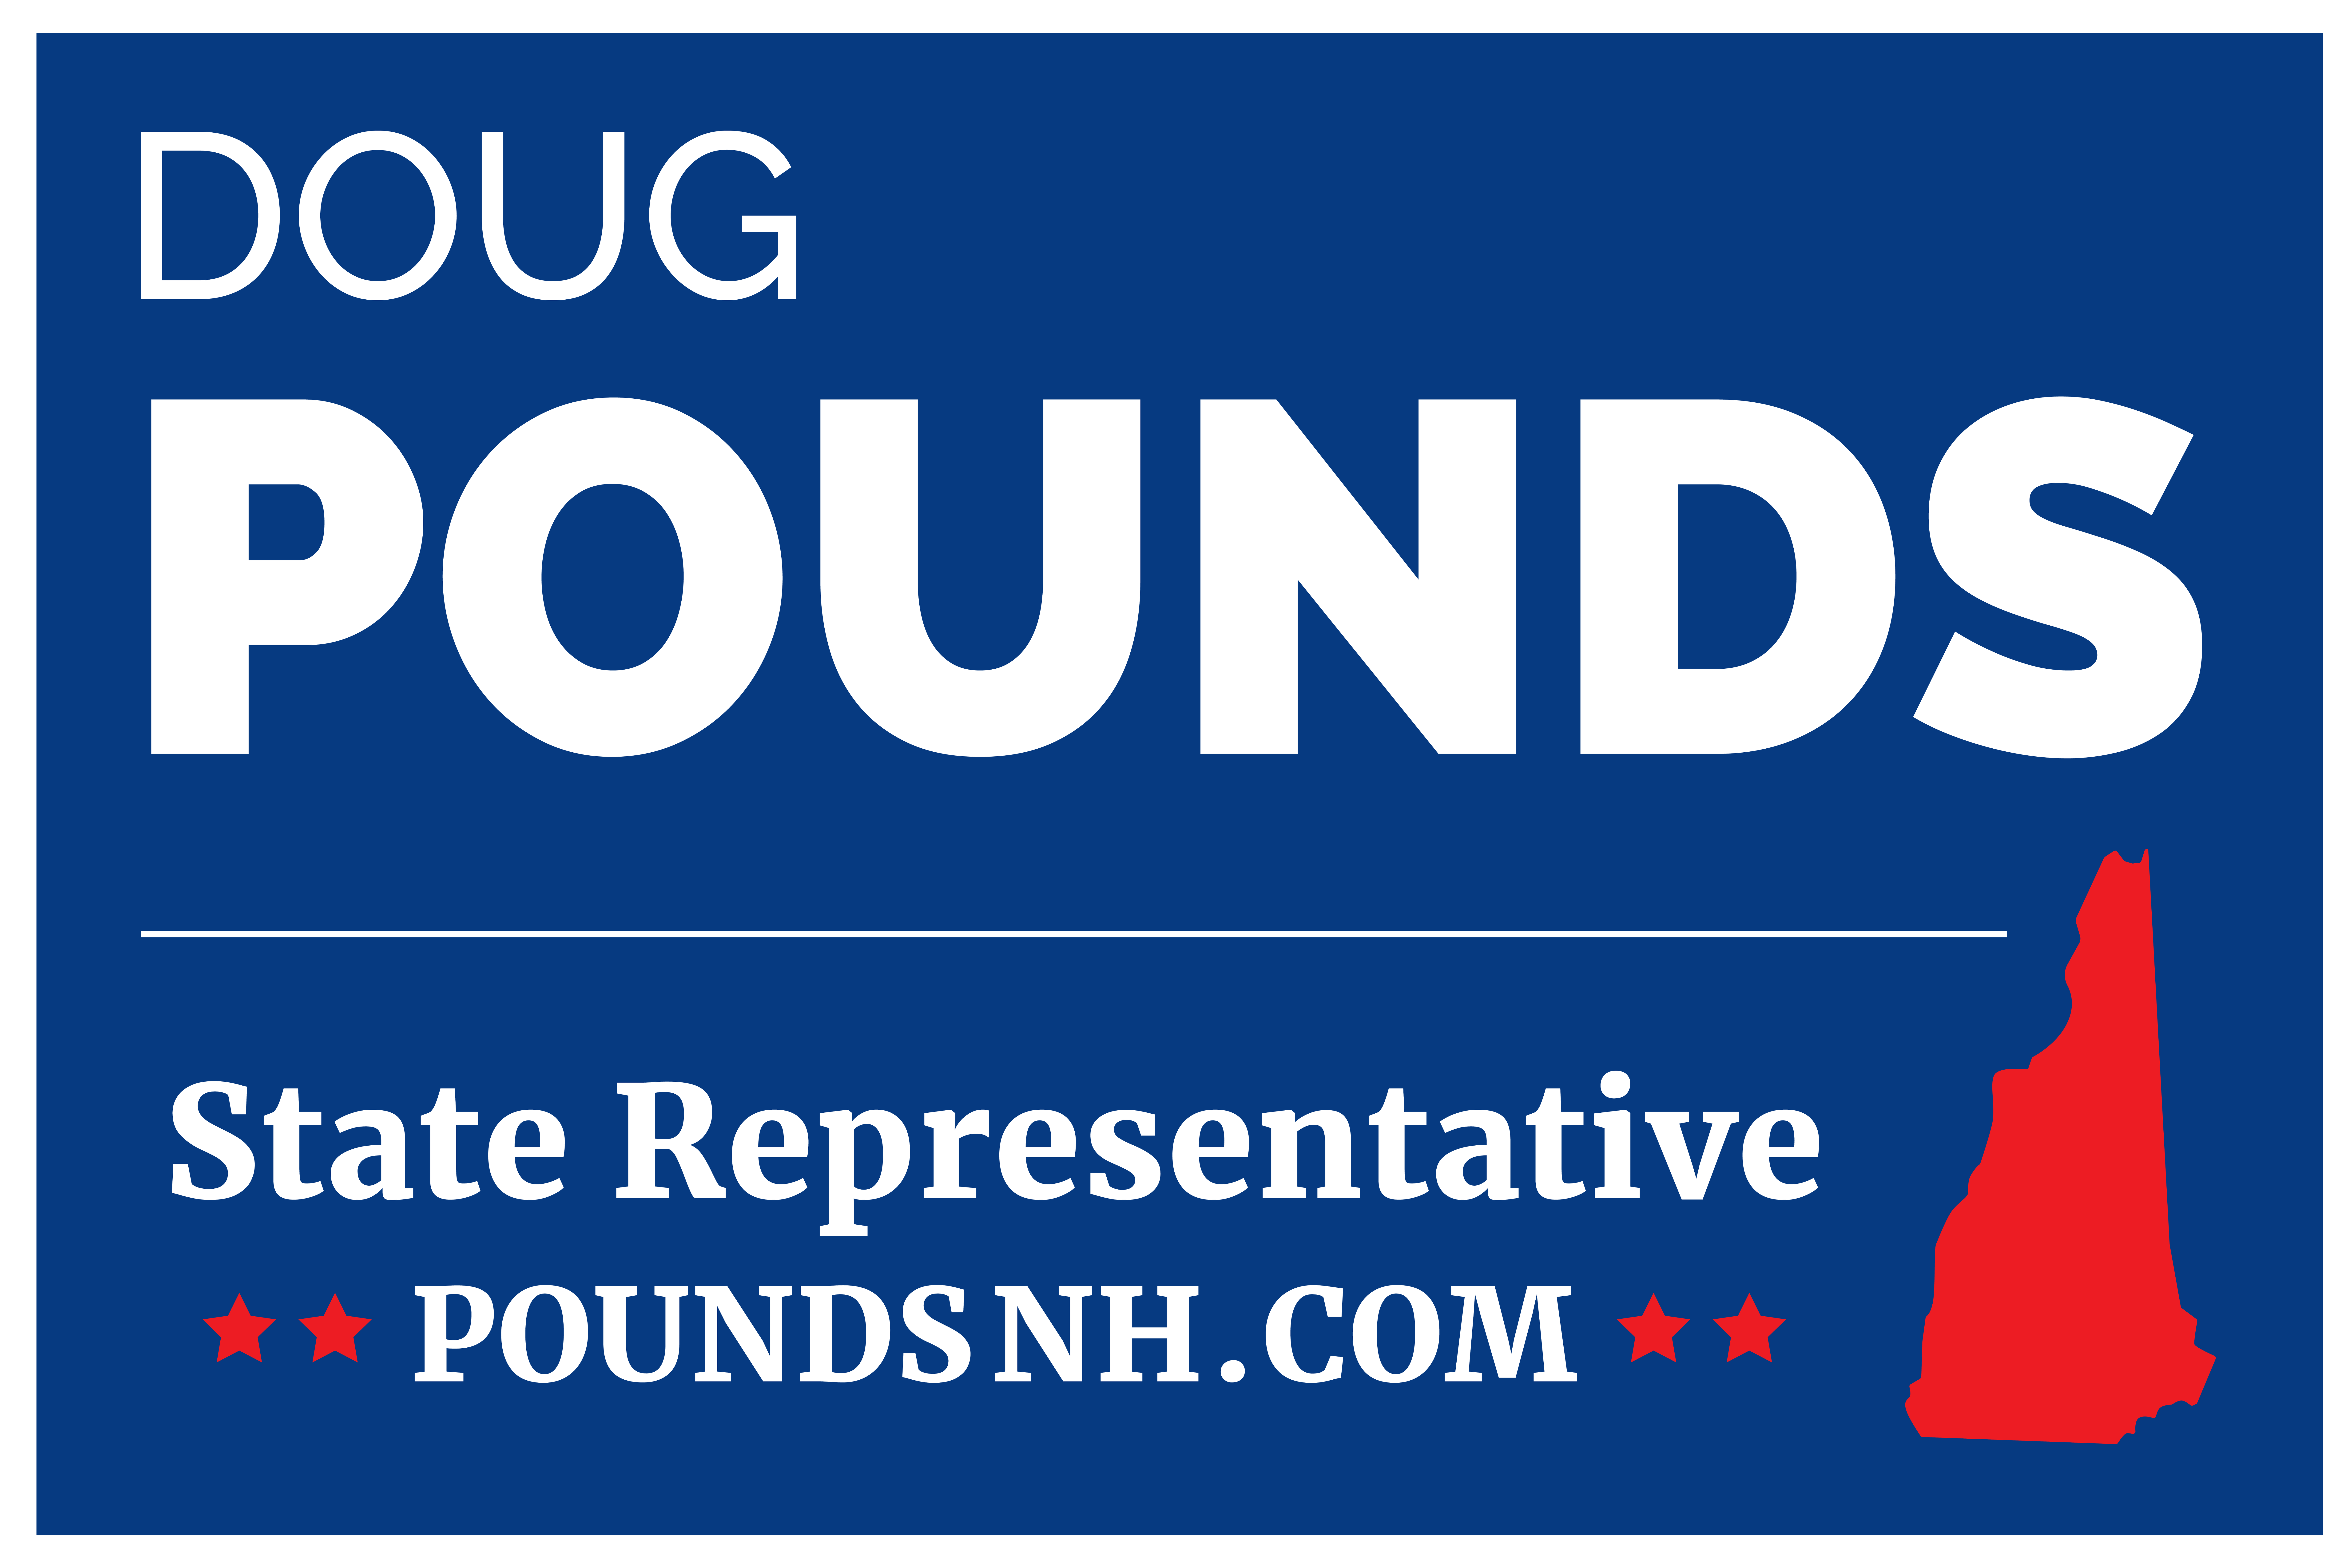 Doug Pounds